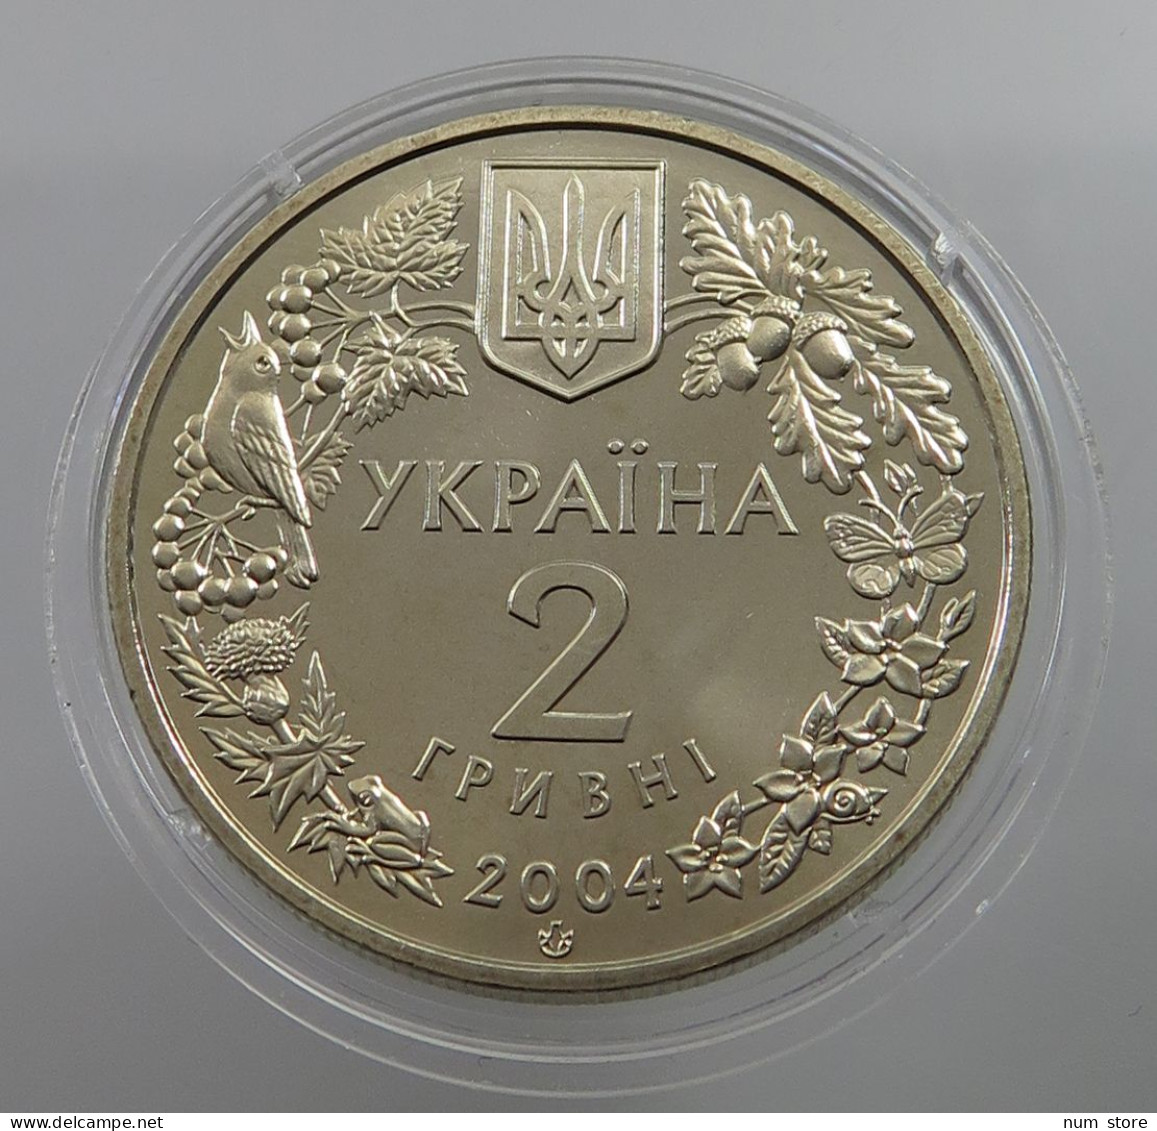 UKRAINE 2 HRYVNI 2004  #w033 0459 - Ukraine